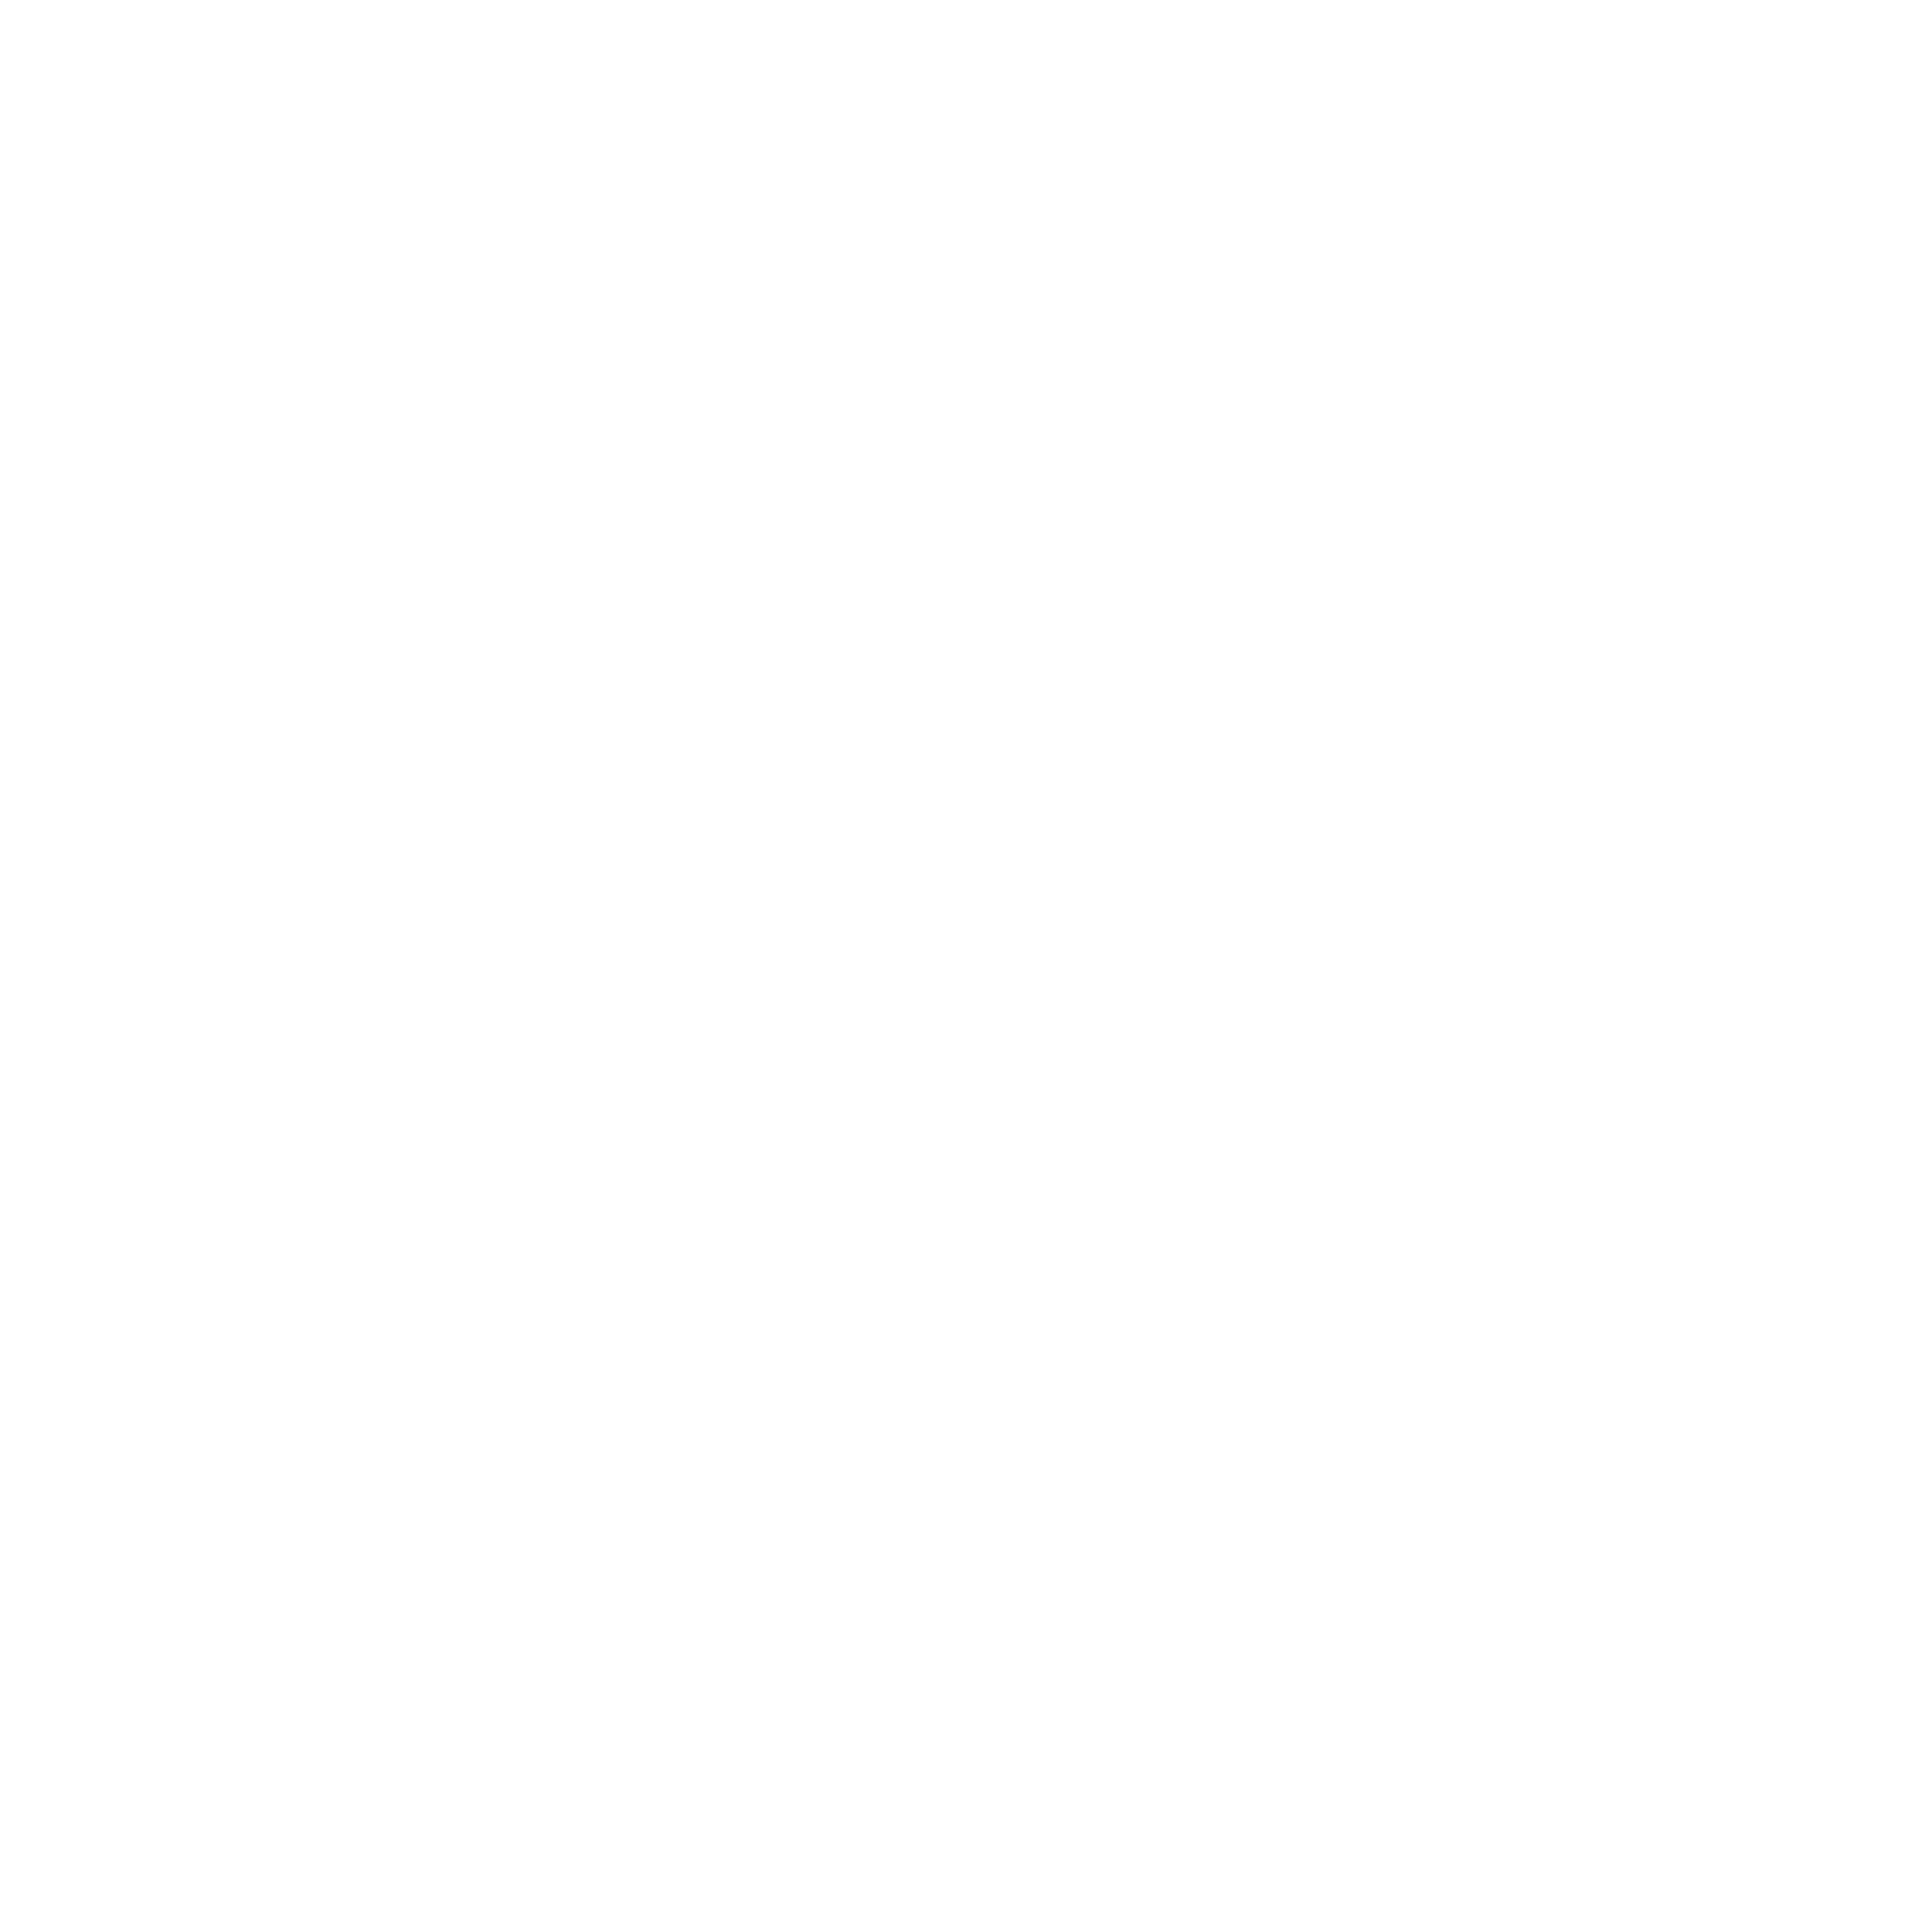 yit-logo-black-and-white